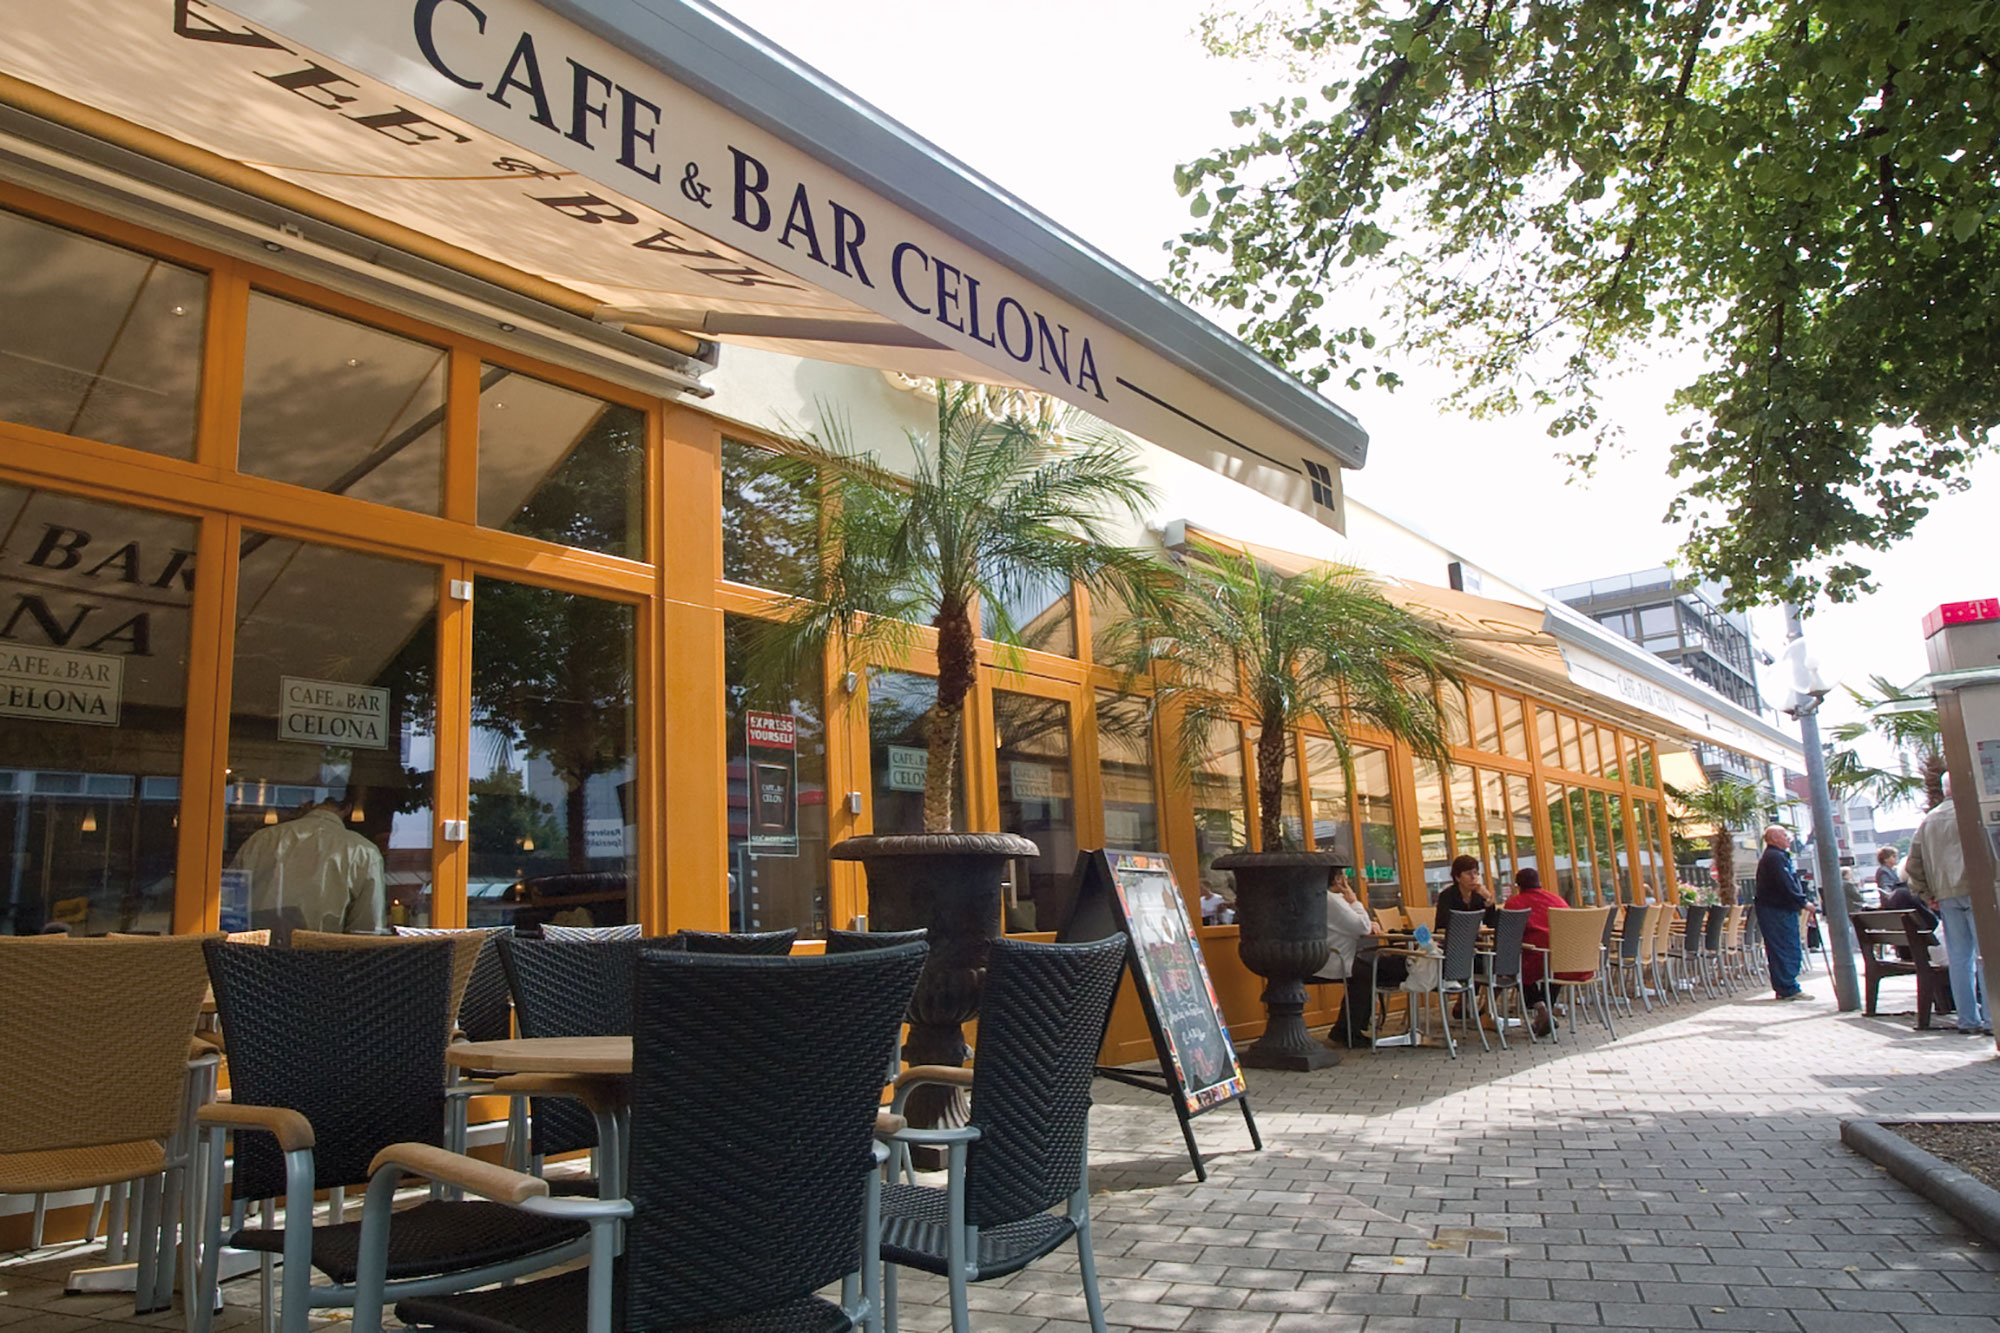 Cafe Und Bar Celona Wolfsburg